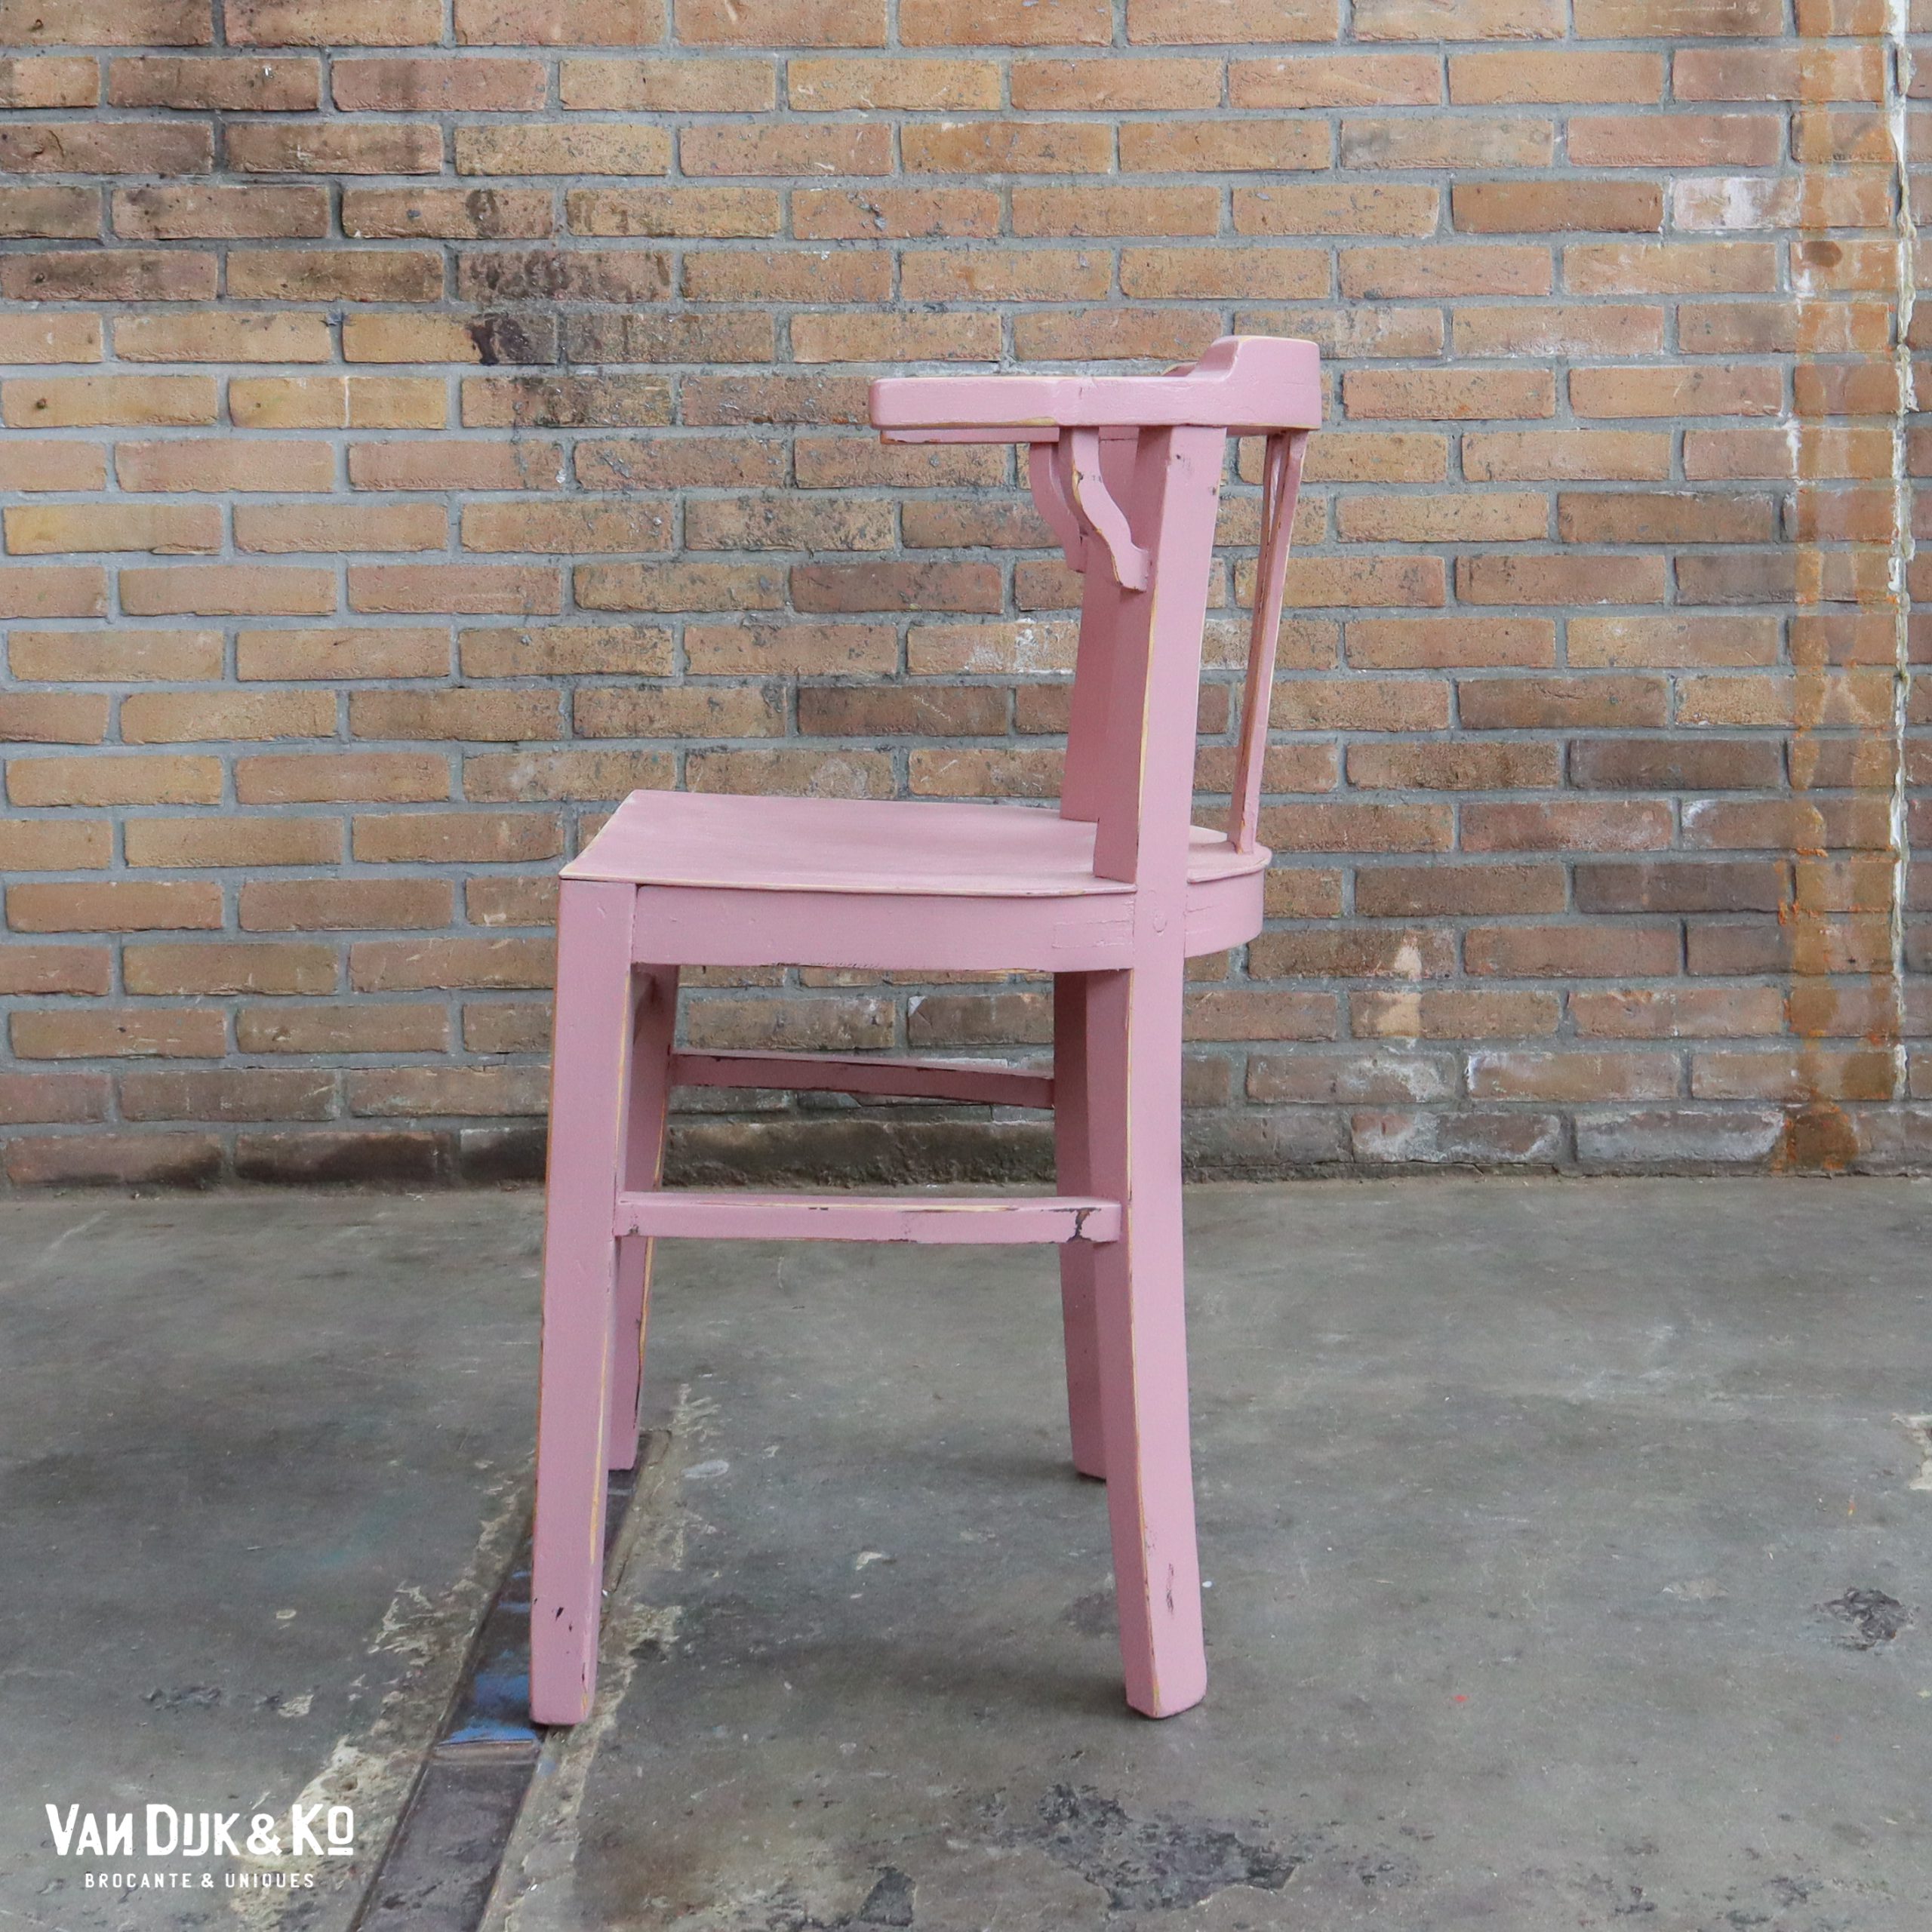 in verlegenheid gebracht Bestrooi voor mij Brocante roze stoelen » Van Dijk & Ko